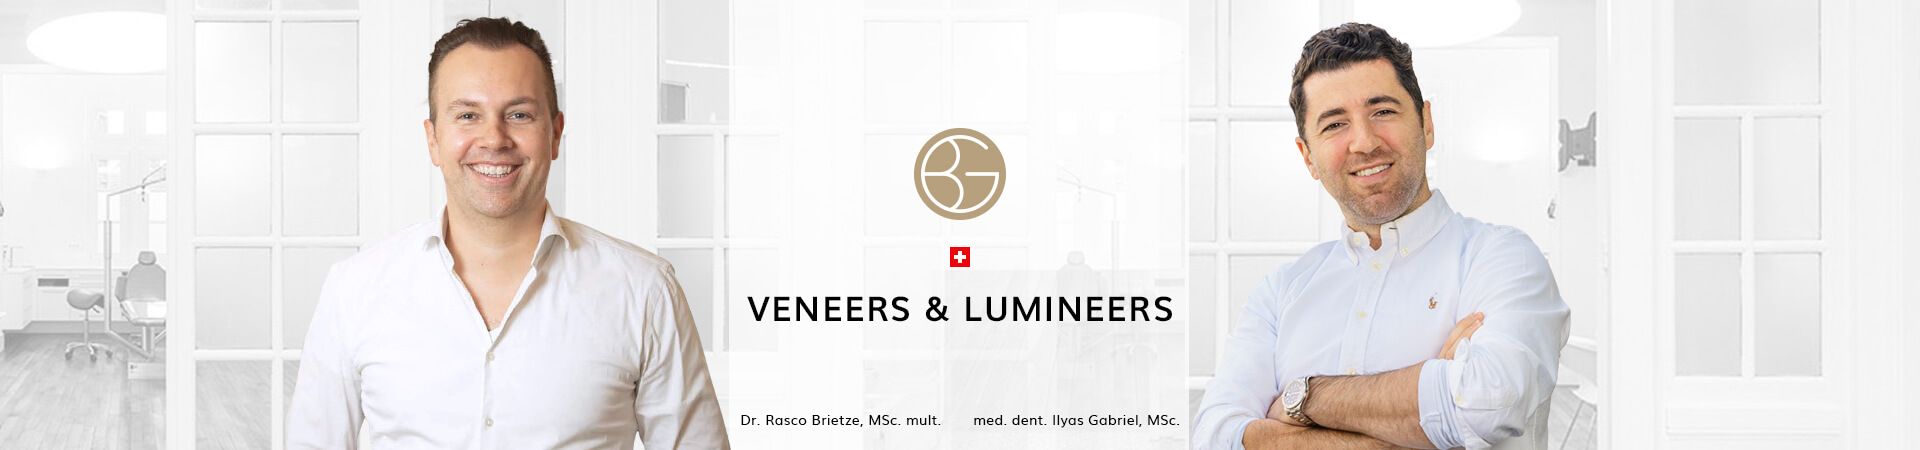 Veneers & Lumineers, Zahnärzte Ebmatingen, Dr. Brietze & Dr. Gabriel 